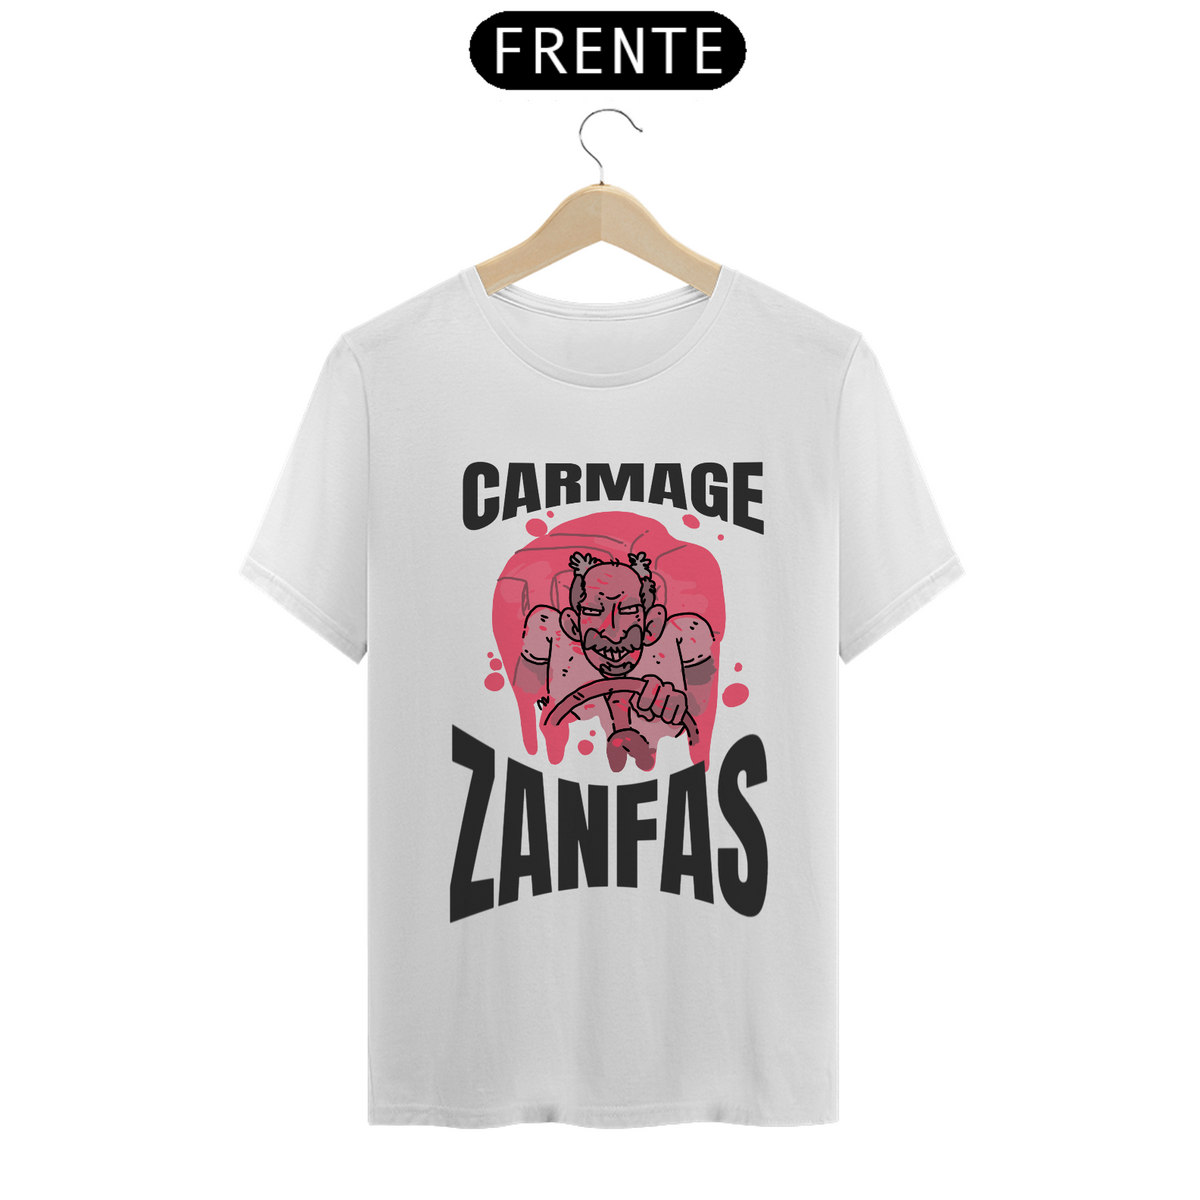 Nome do produto: Camisa Unissex - CarmageZanfas - versão 2